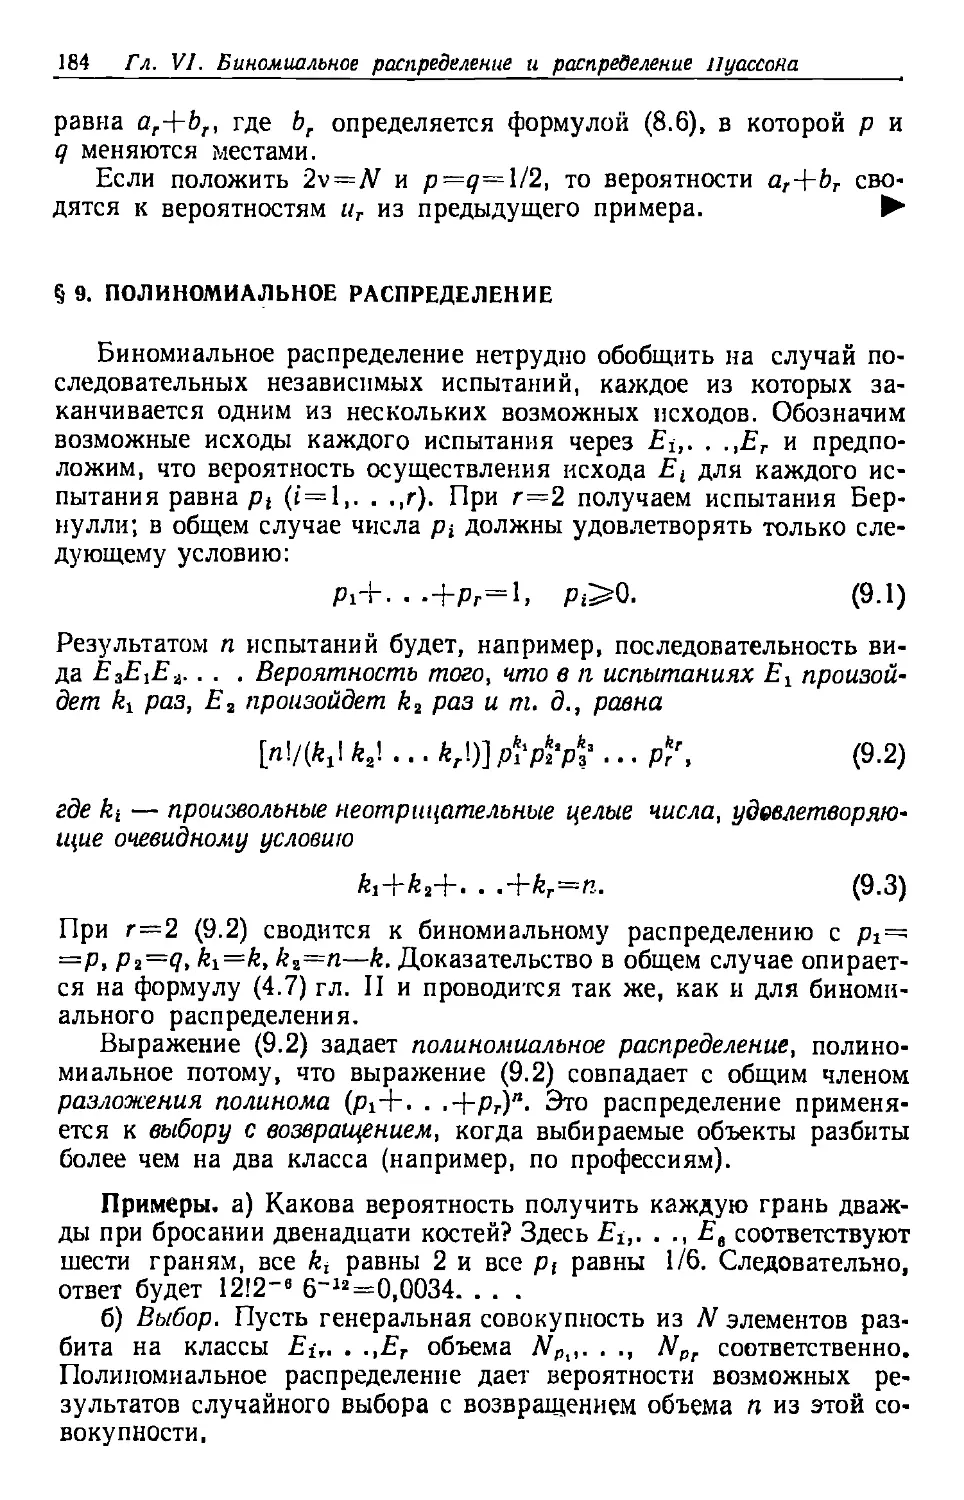 § 9. Полиномиальное распределение